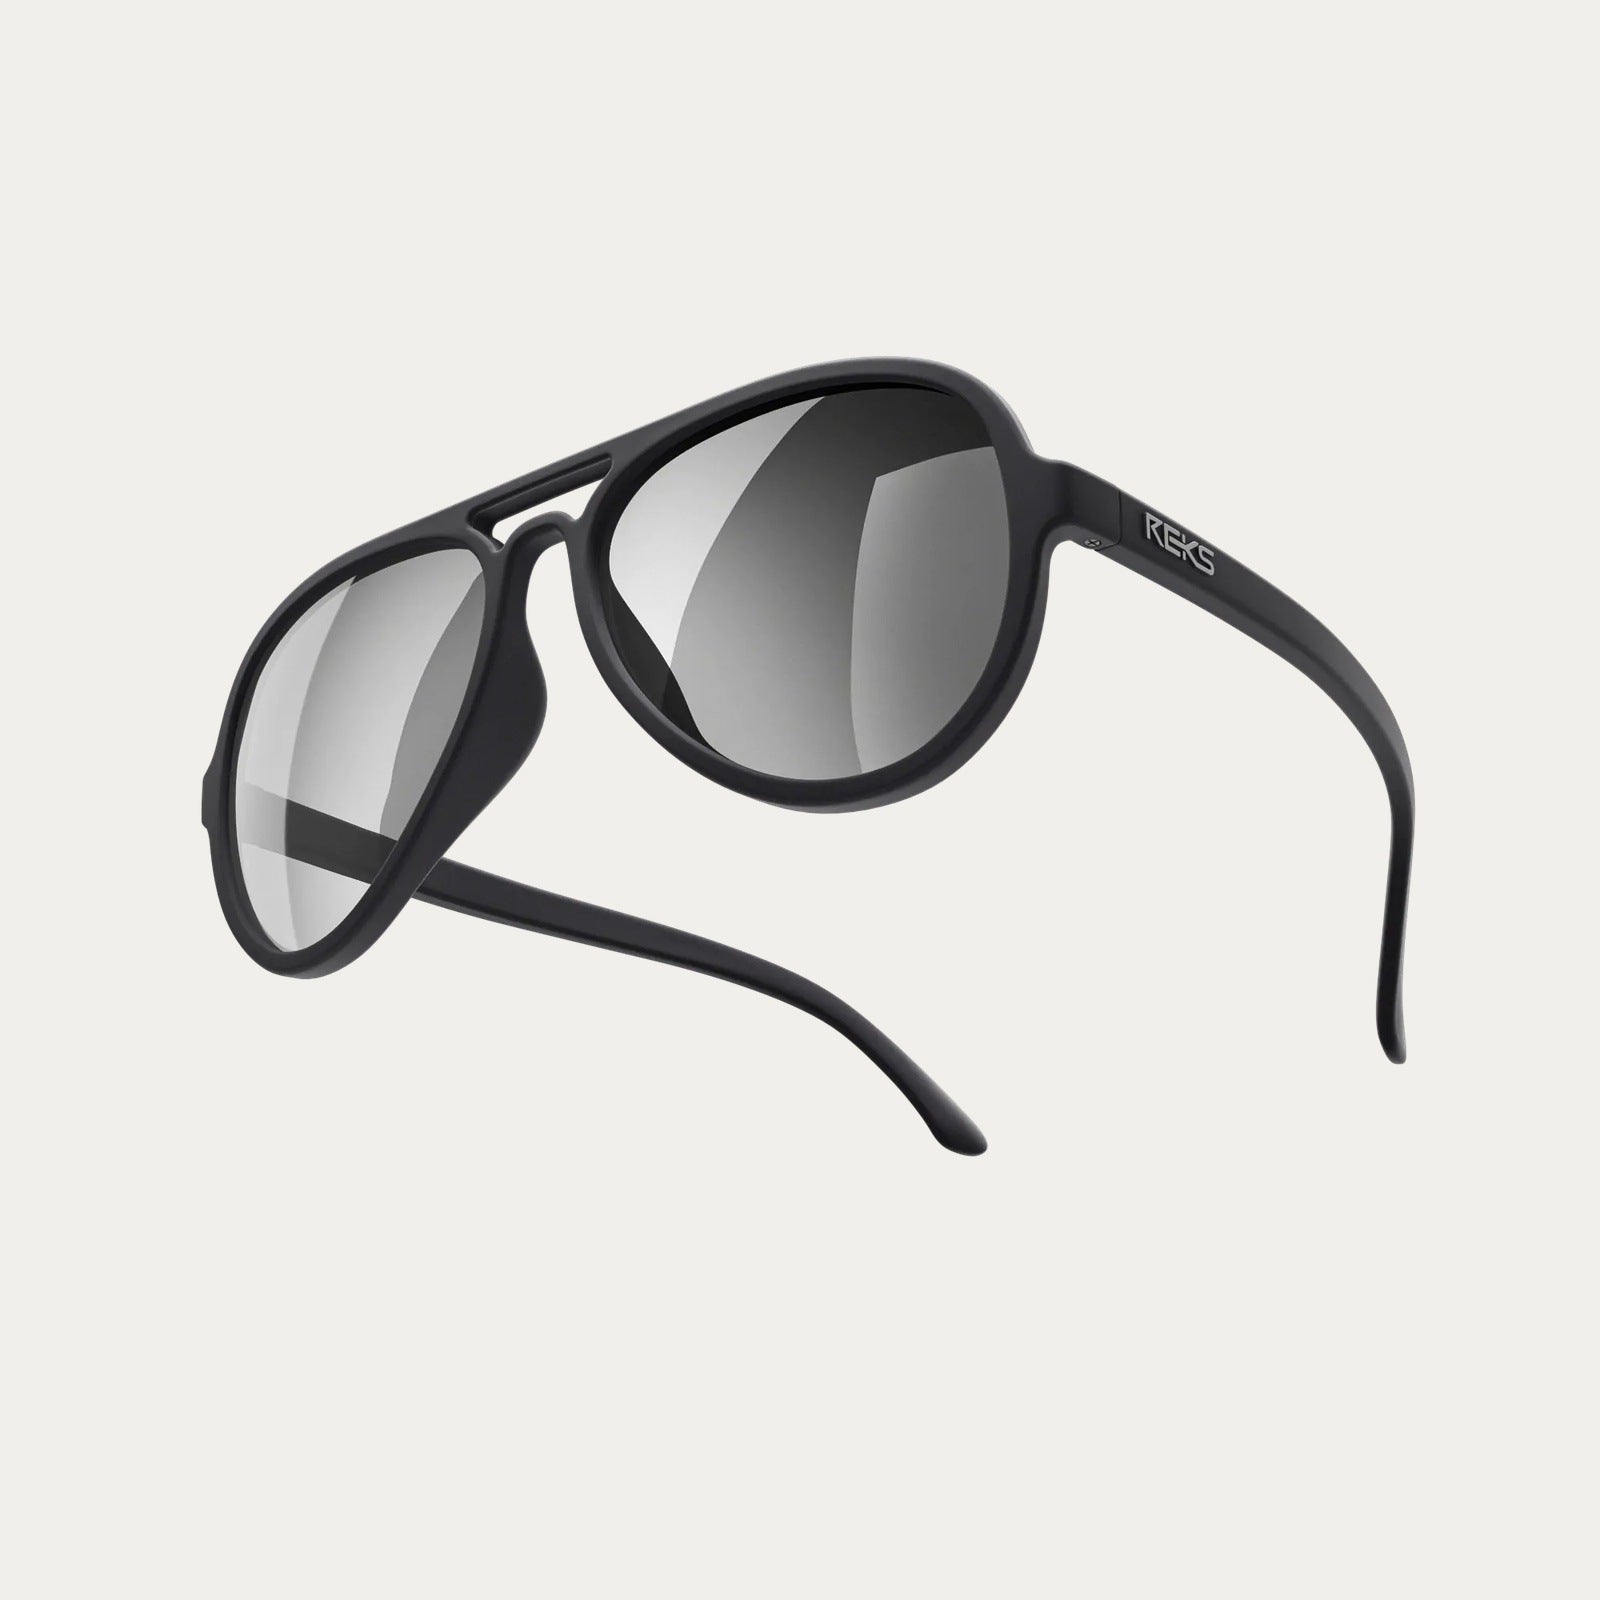 Reks | Aviator Polarized Polycarbonate Sunglasses Smoke